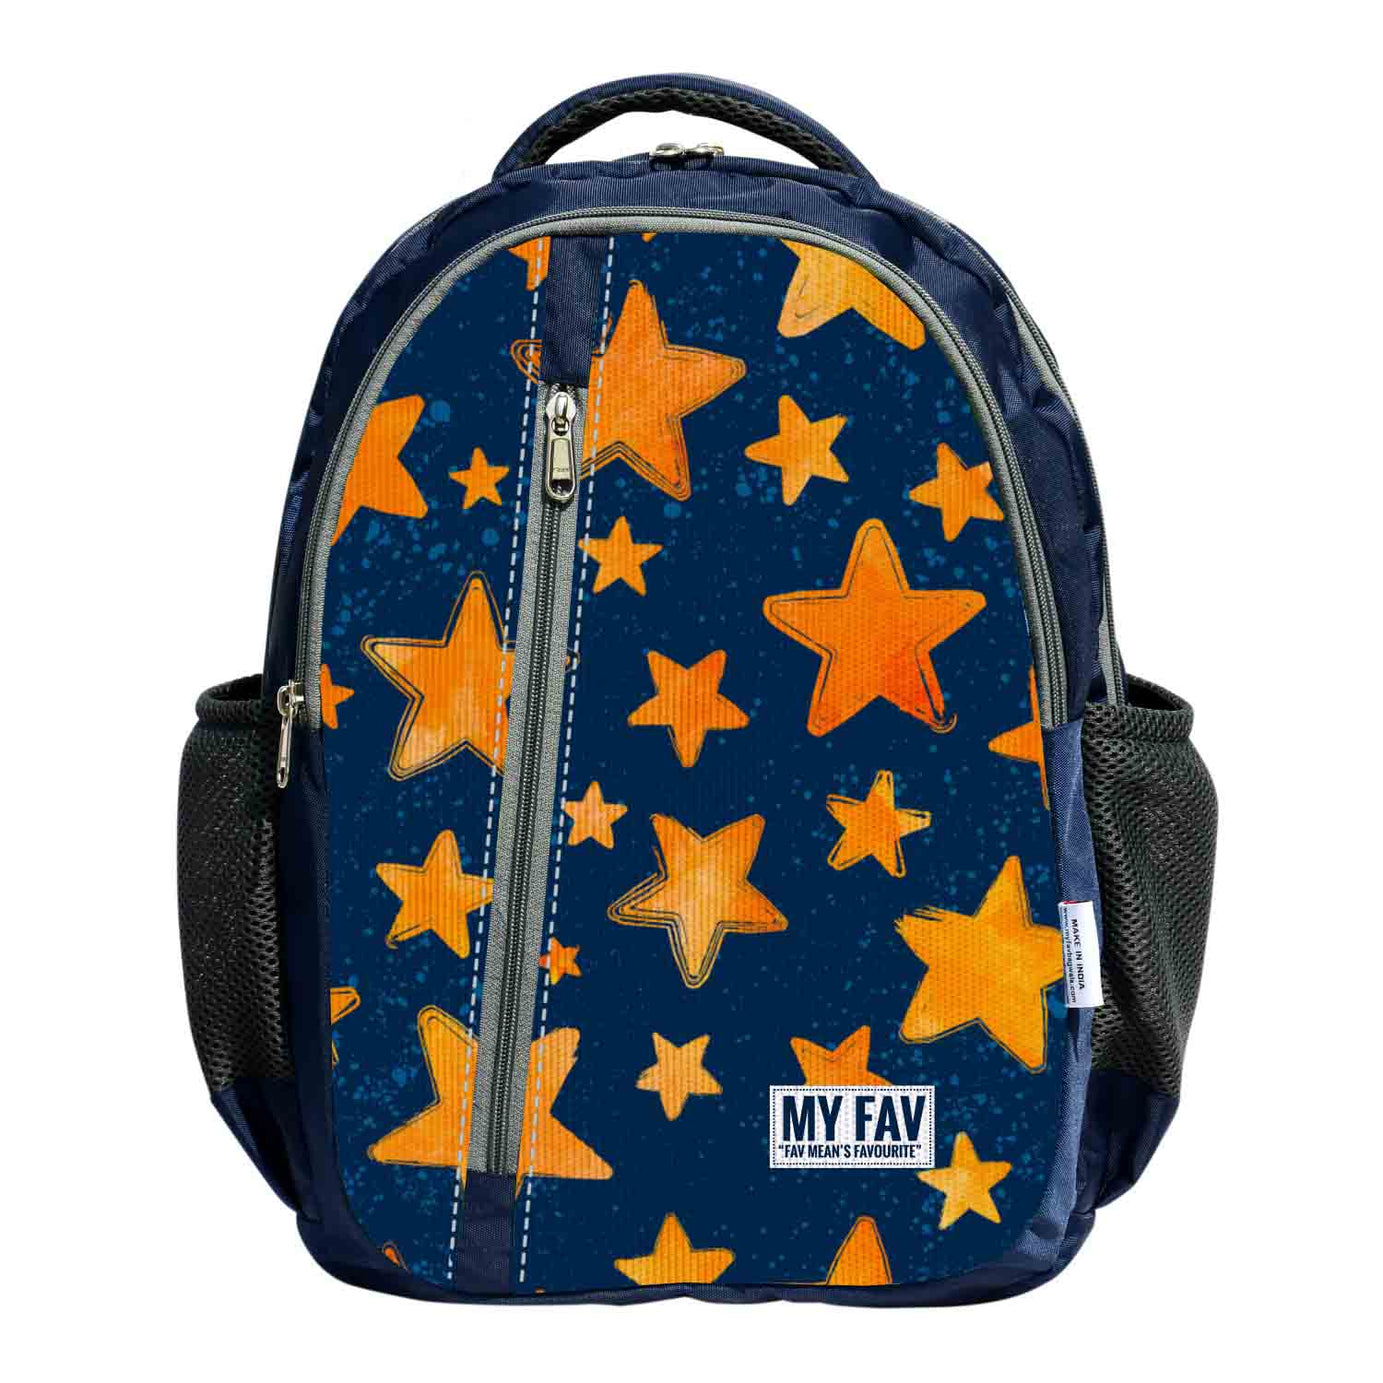 My Fav Stars Print Laptop Backpack For Men Women / School Bag For Boys Girls